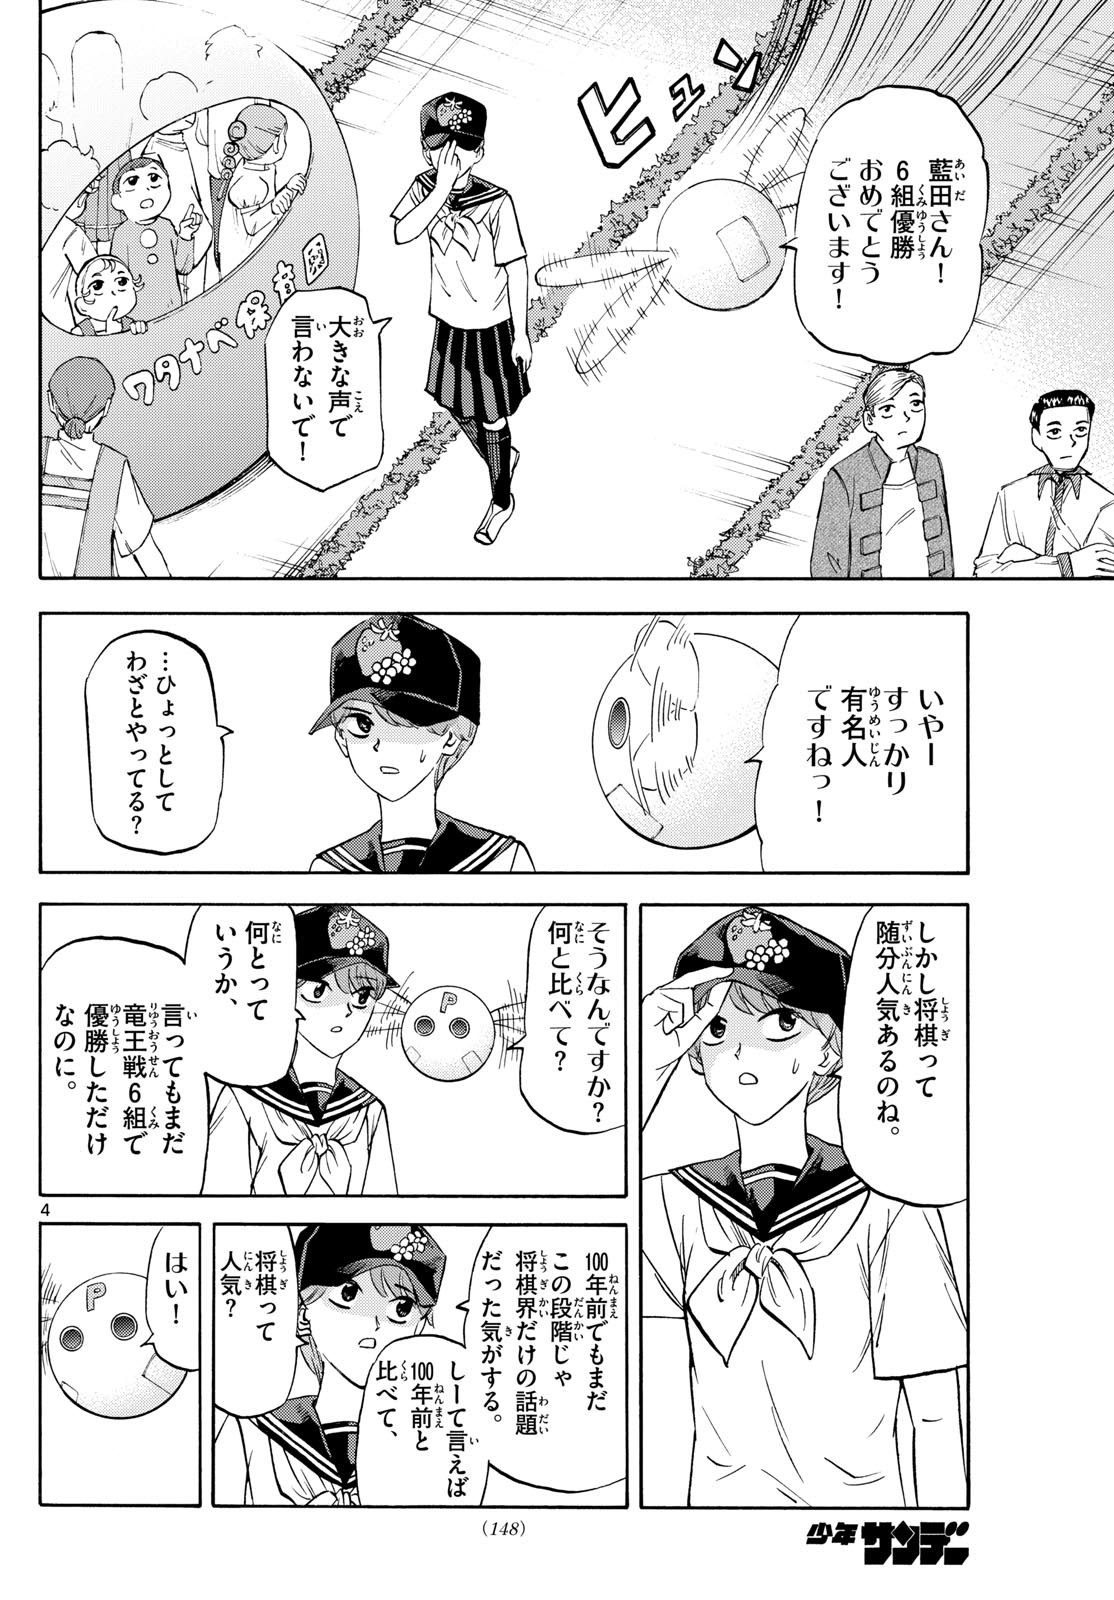 Ryu-to-Ichigo - Chapter 195 - Page 4